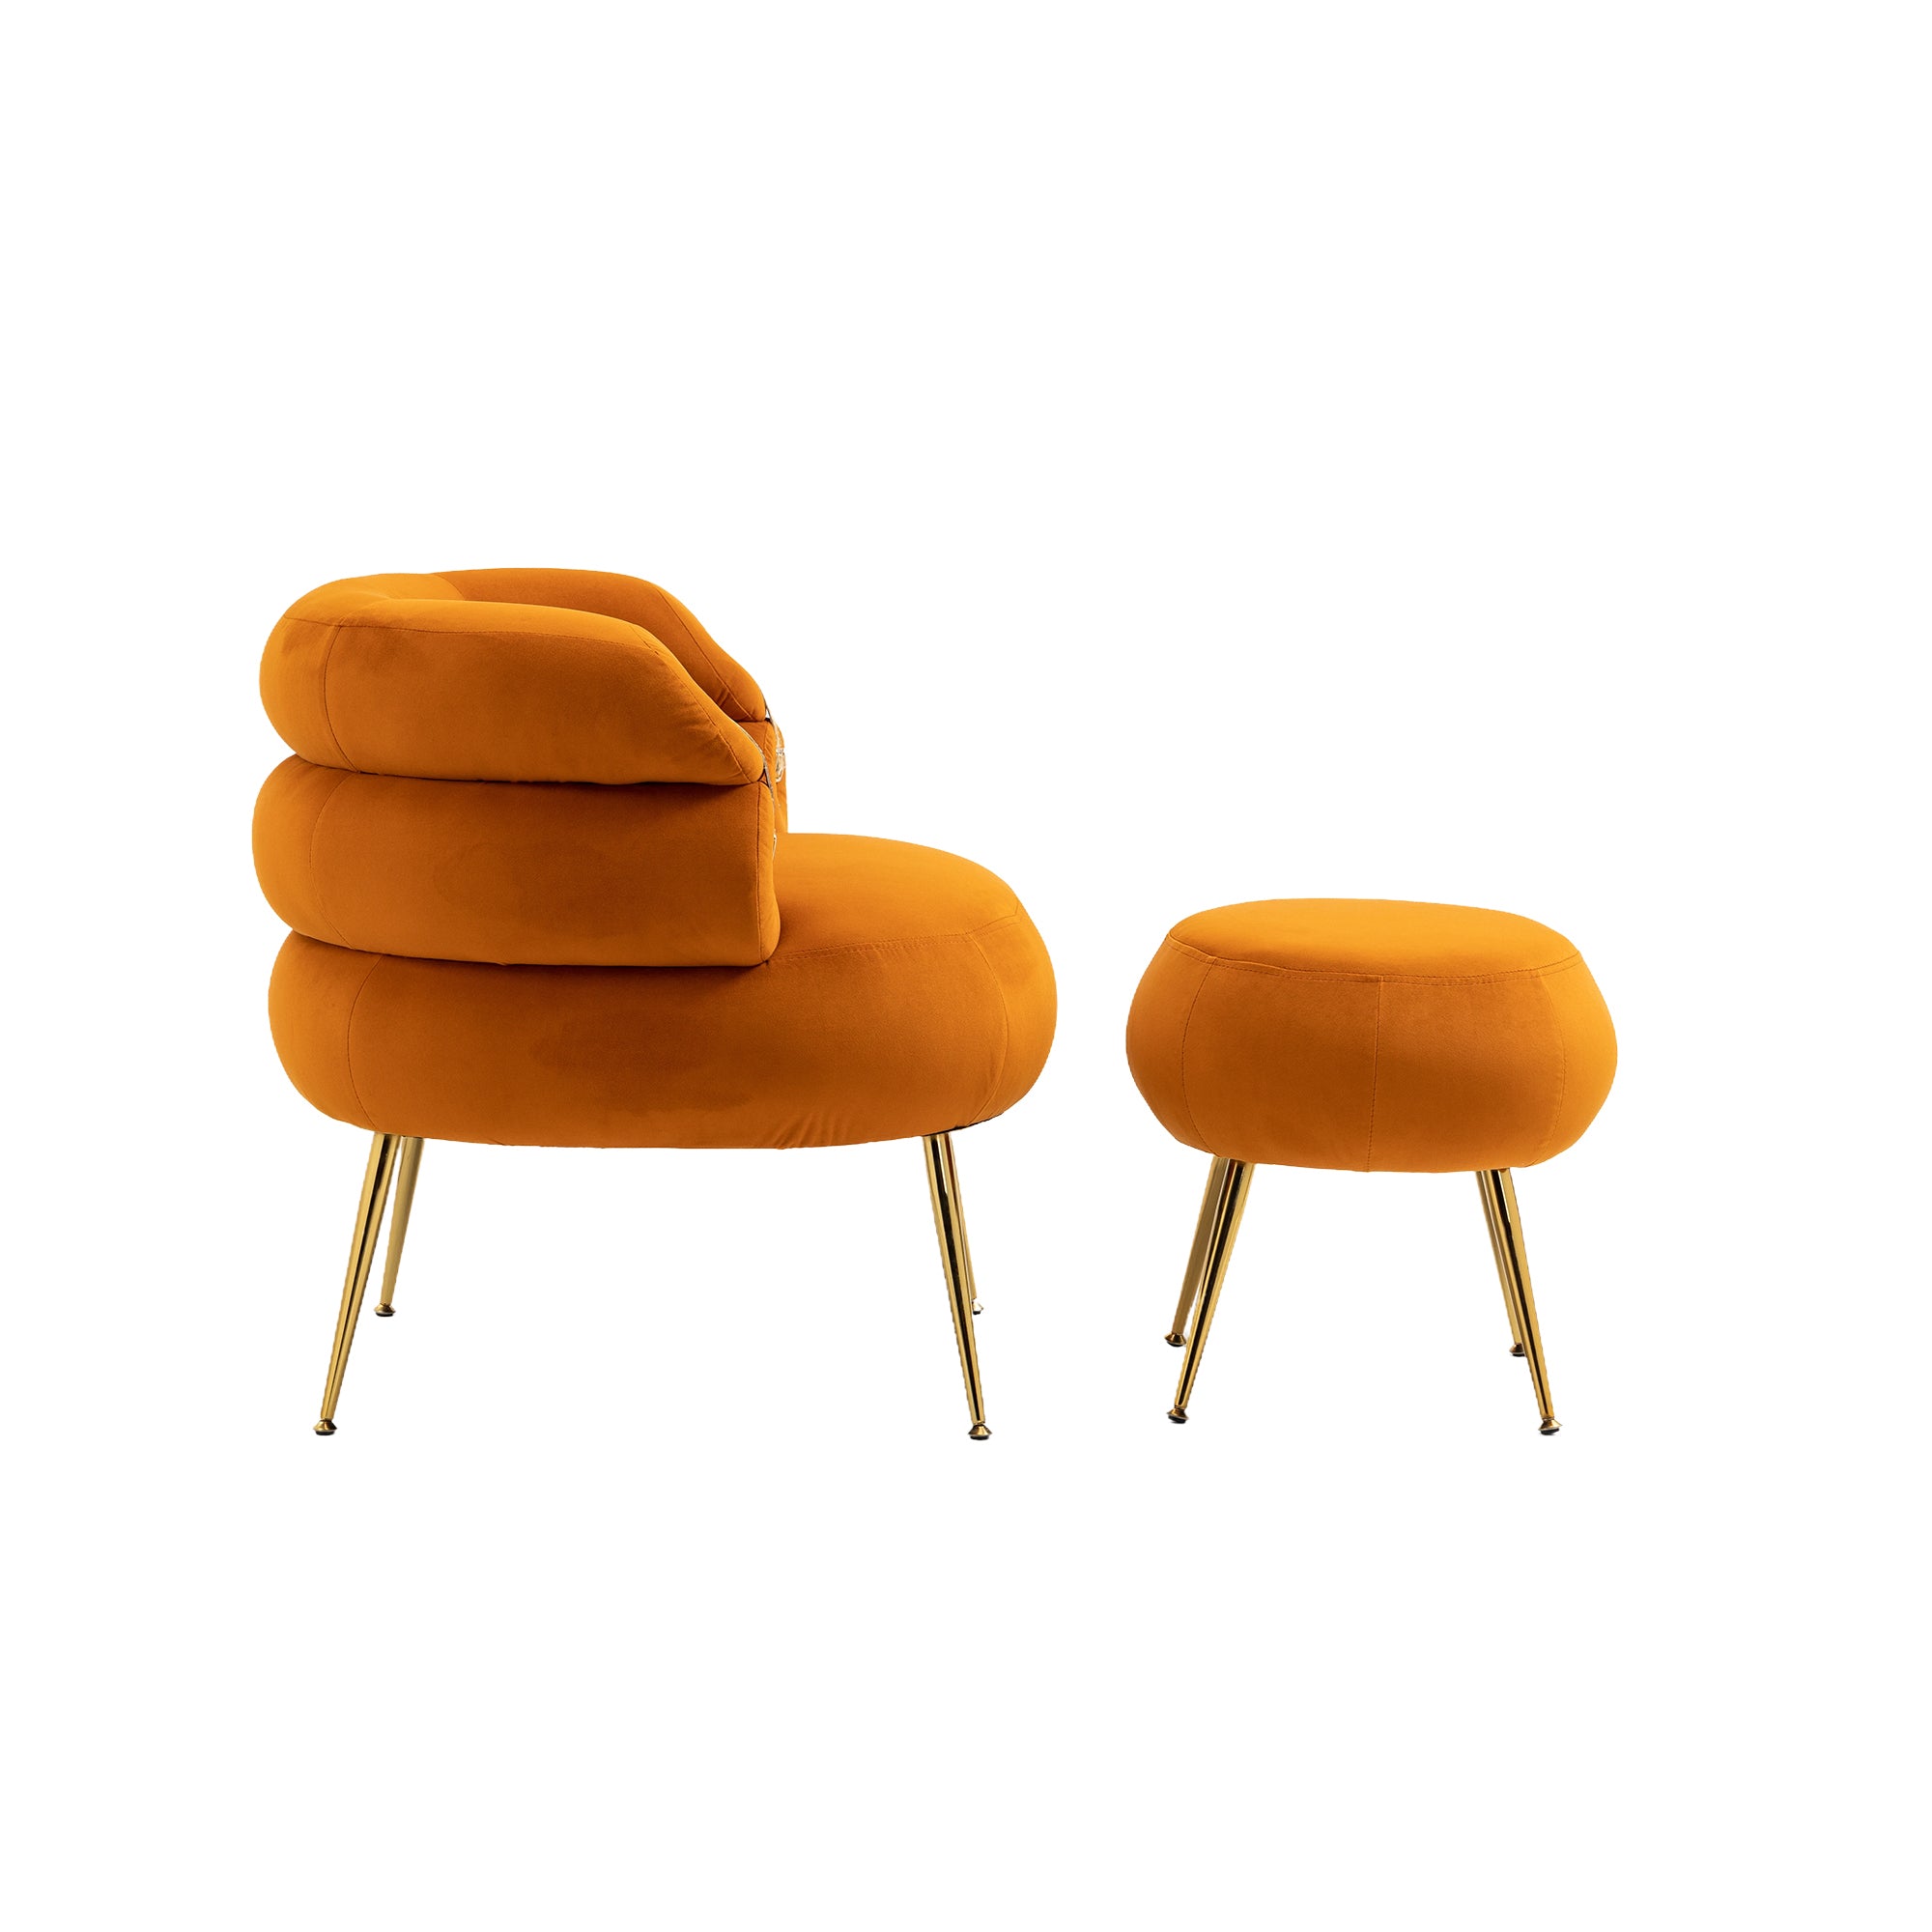 COOLMORE Velvet Accent Chair Modern Upholstered orange-velvet